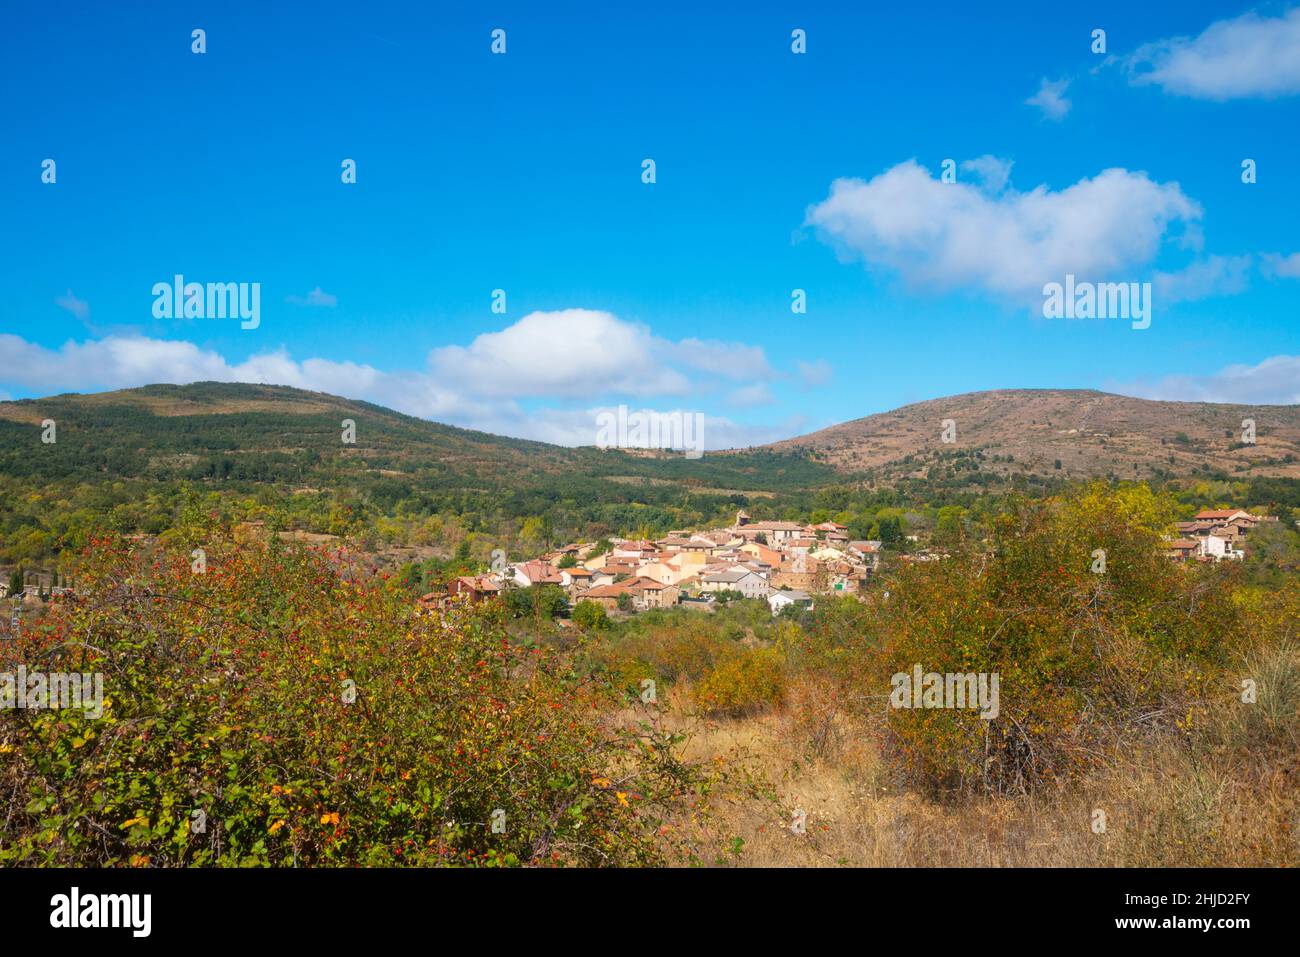 Overview and landscape. Horcajuelo de la Sierra,  Madrid province, Spain. Stock Photo